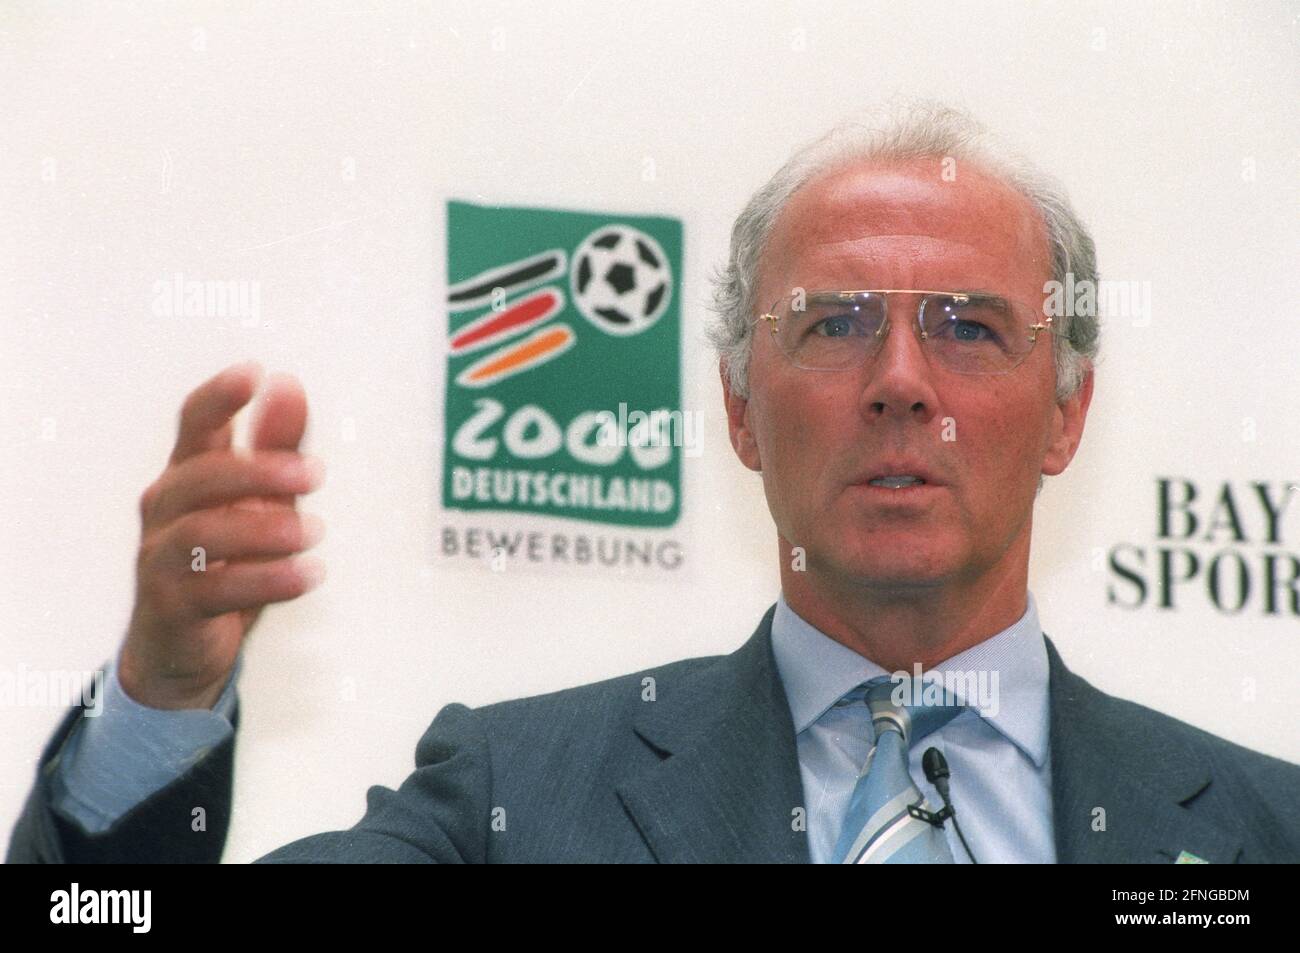 Conférence de presse pour la coupe du monde 2006 le 04.06.1999 à Leverkusen Franz Beckenbauer. [traduction automatique] Banque D'Images